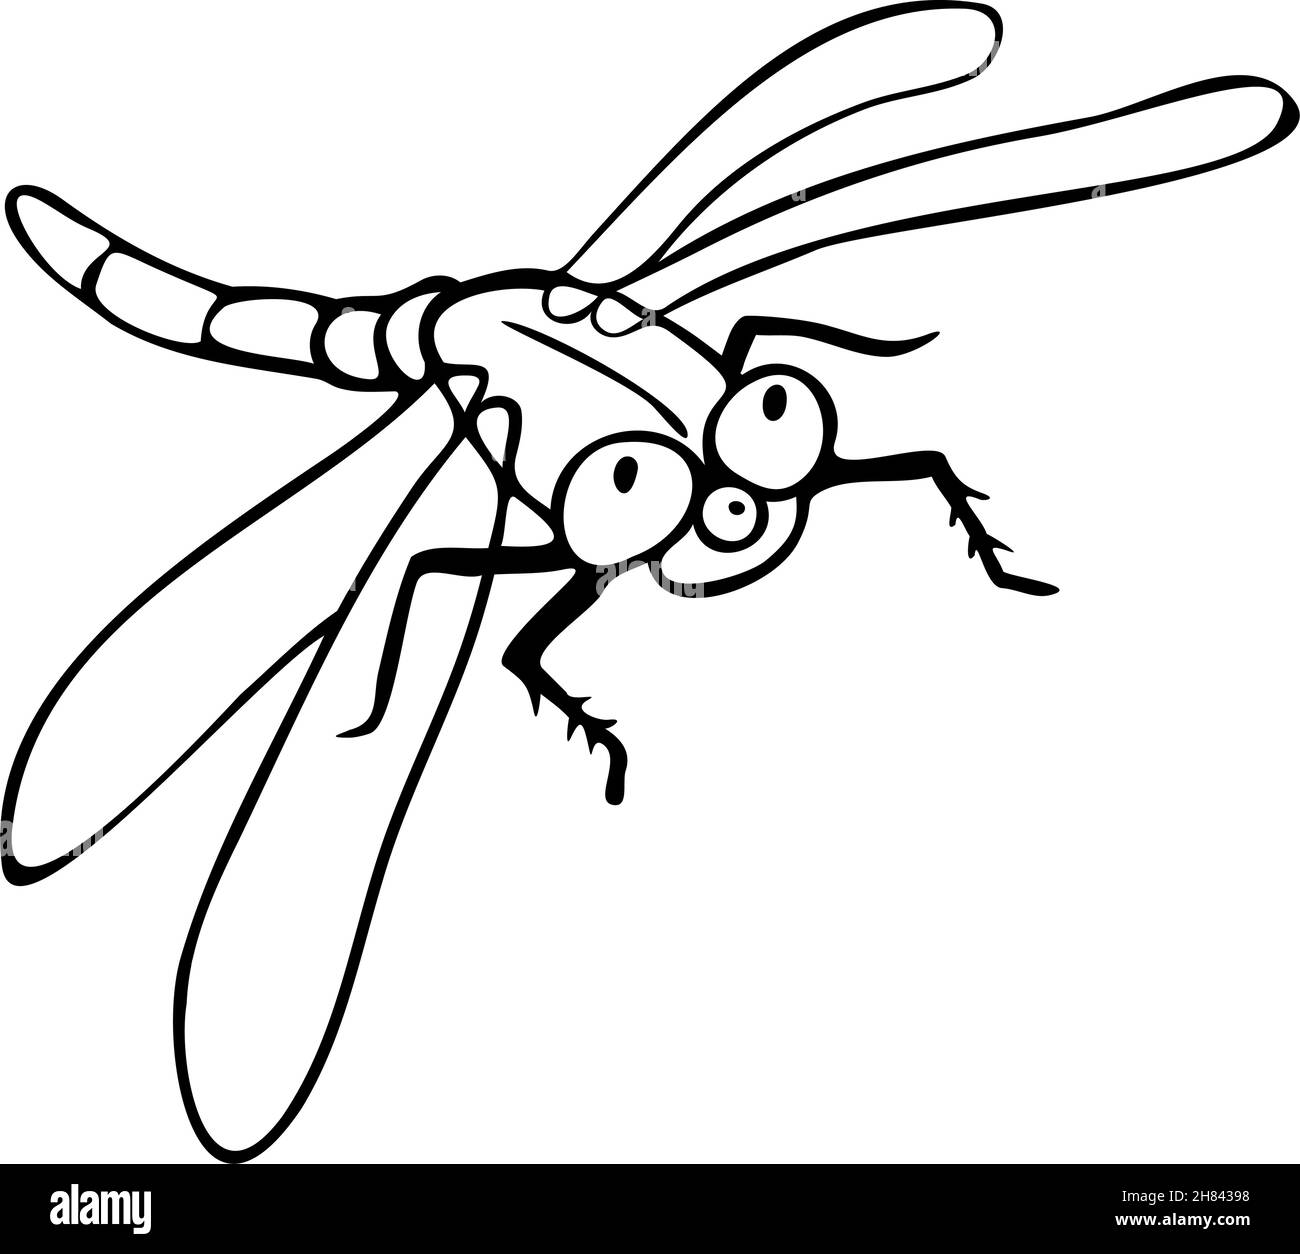 Vektor-Illustration der schwarzen und weißen Libelle. Design für das ausmalen. Stock Vektor